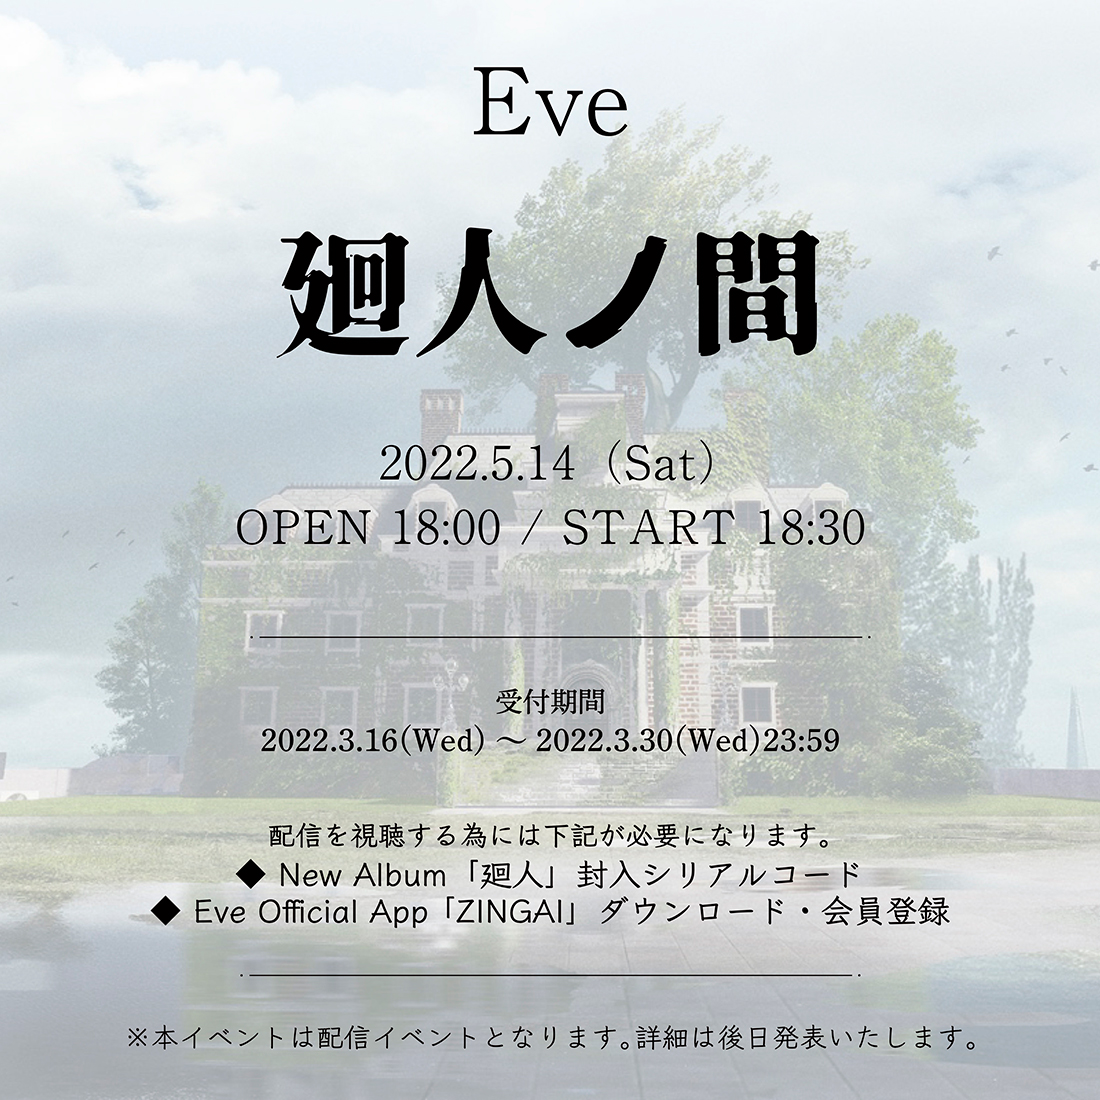 Eve、オンラインイベント『廻人ノ間』の開催を発表